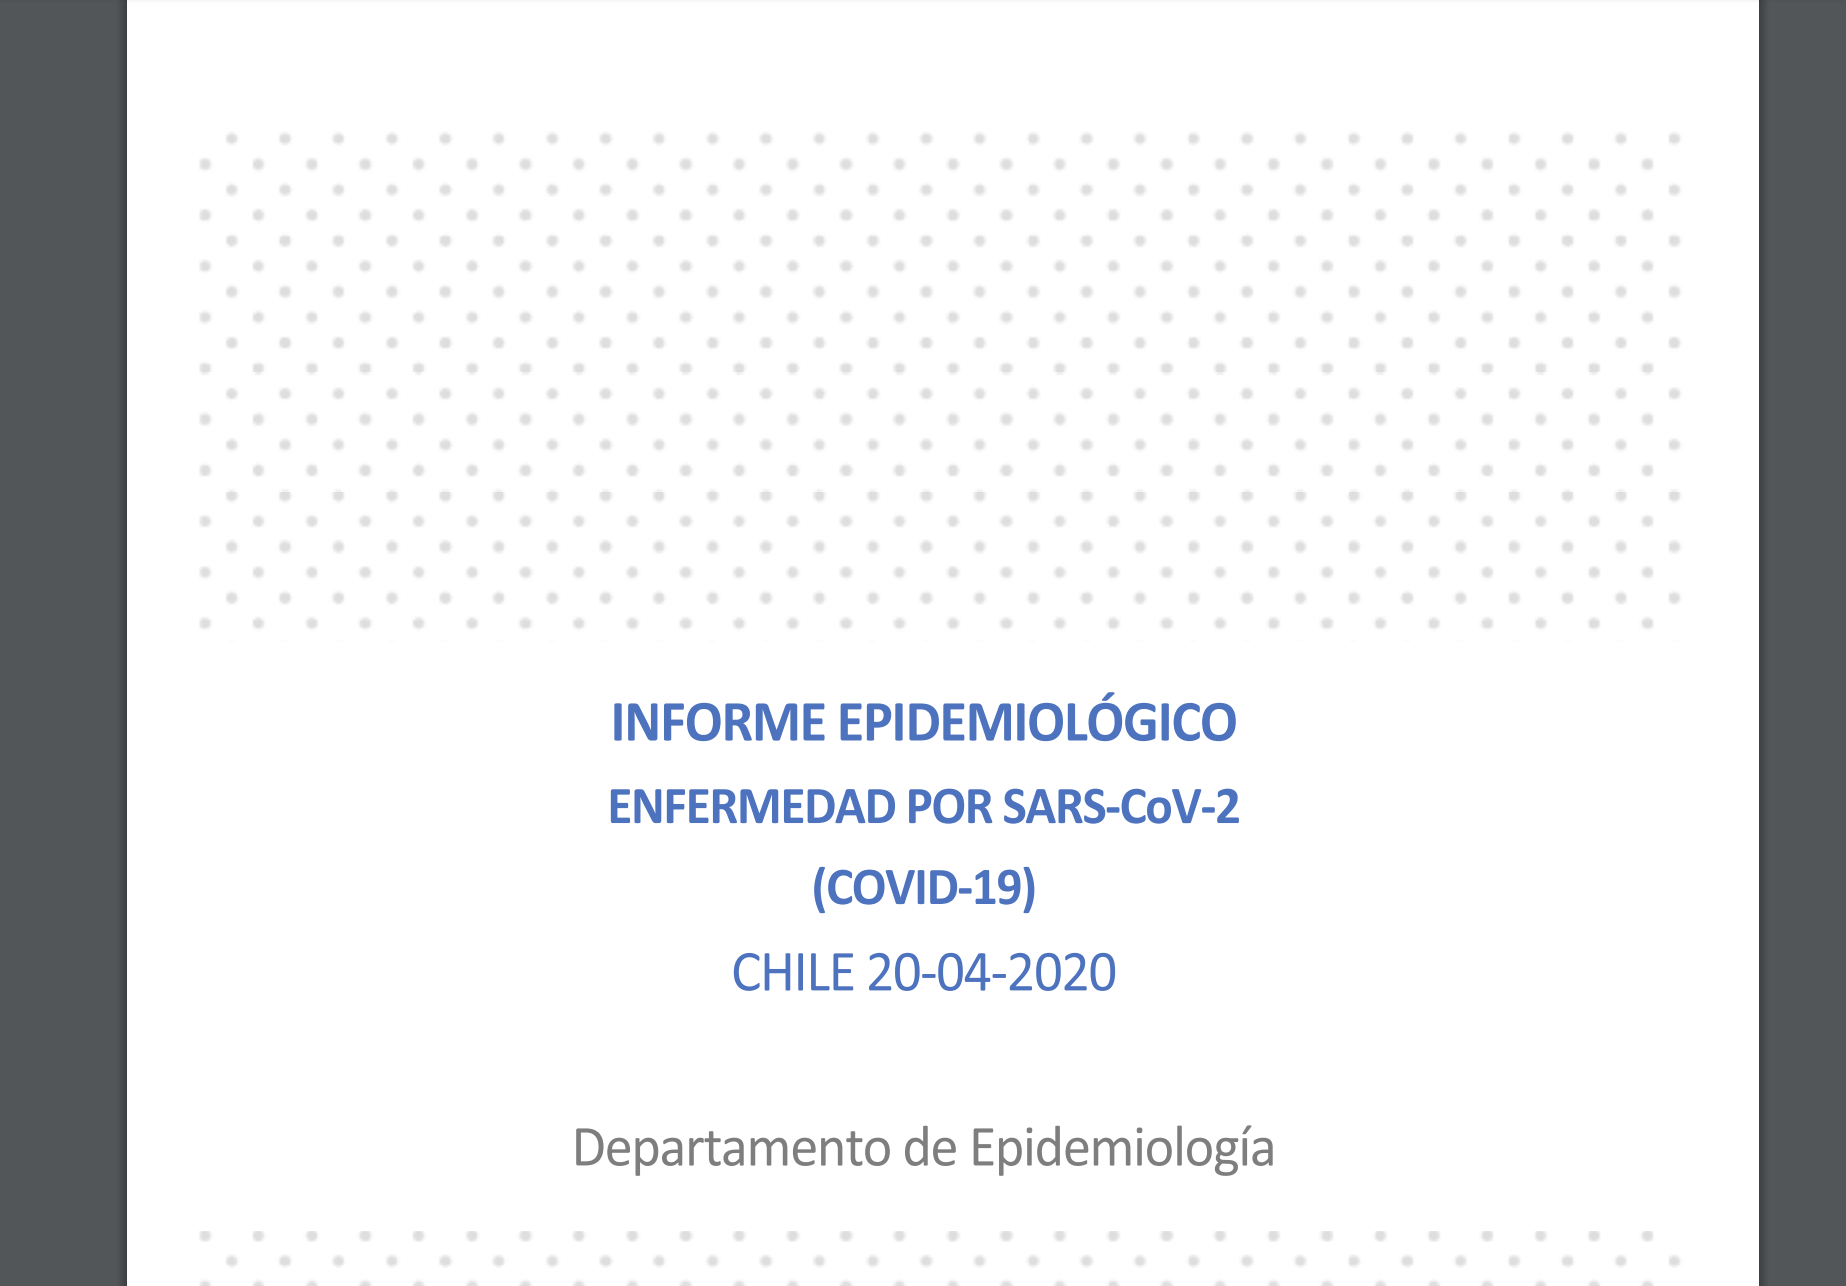 Informe Epidemiologico del Ministerio de Salud Chile